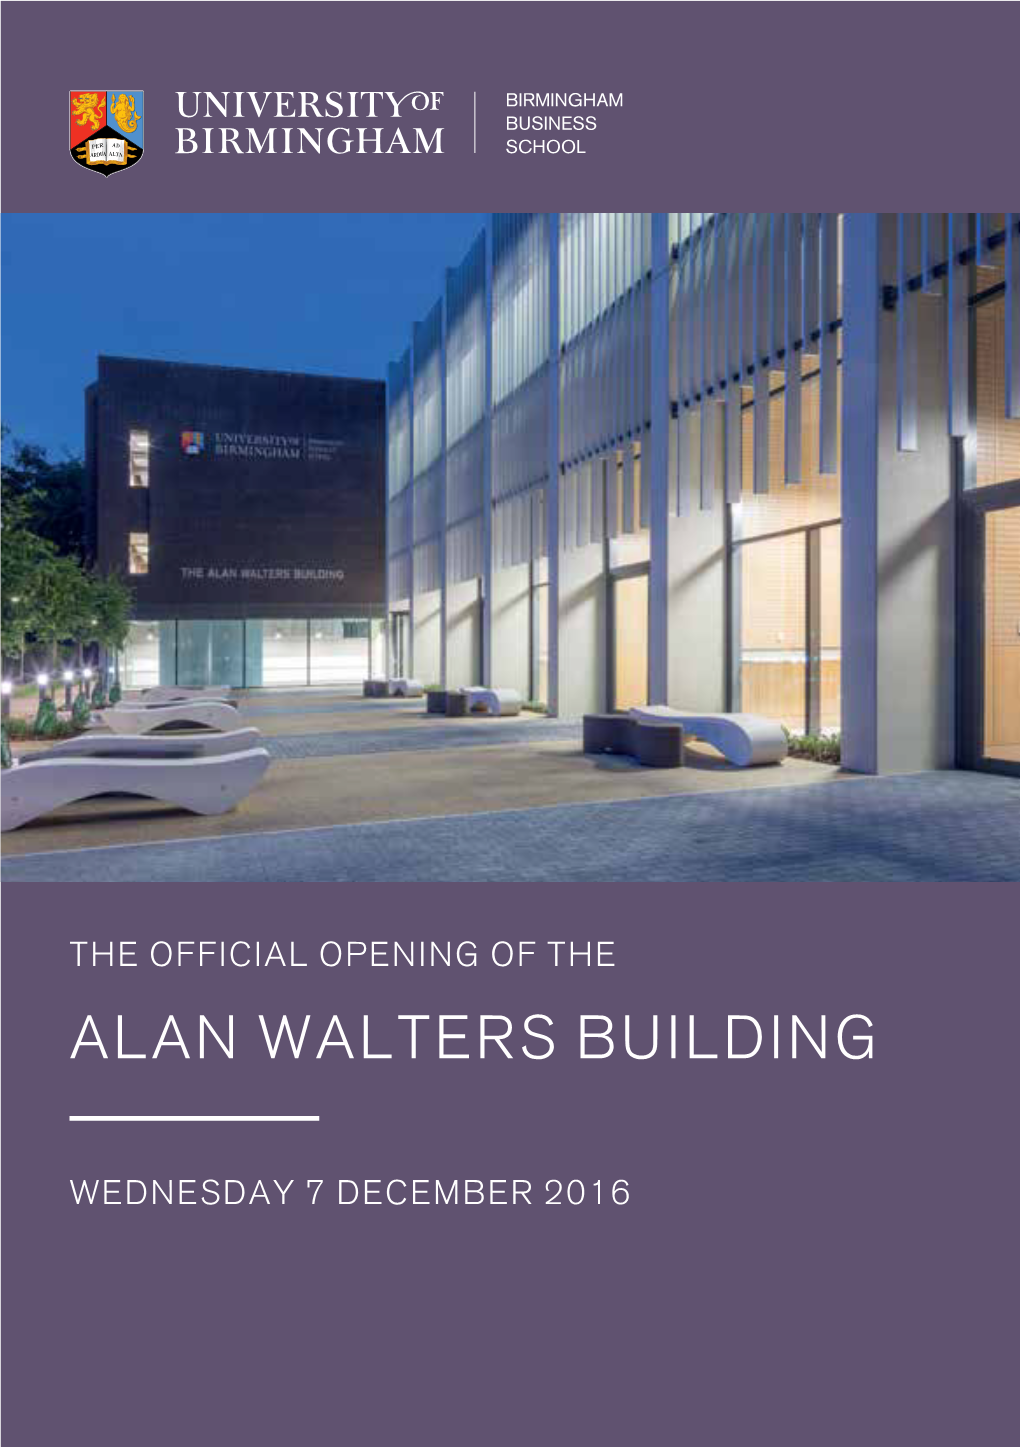 Alan Walters Building